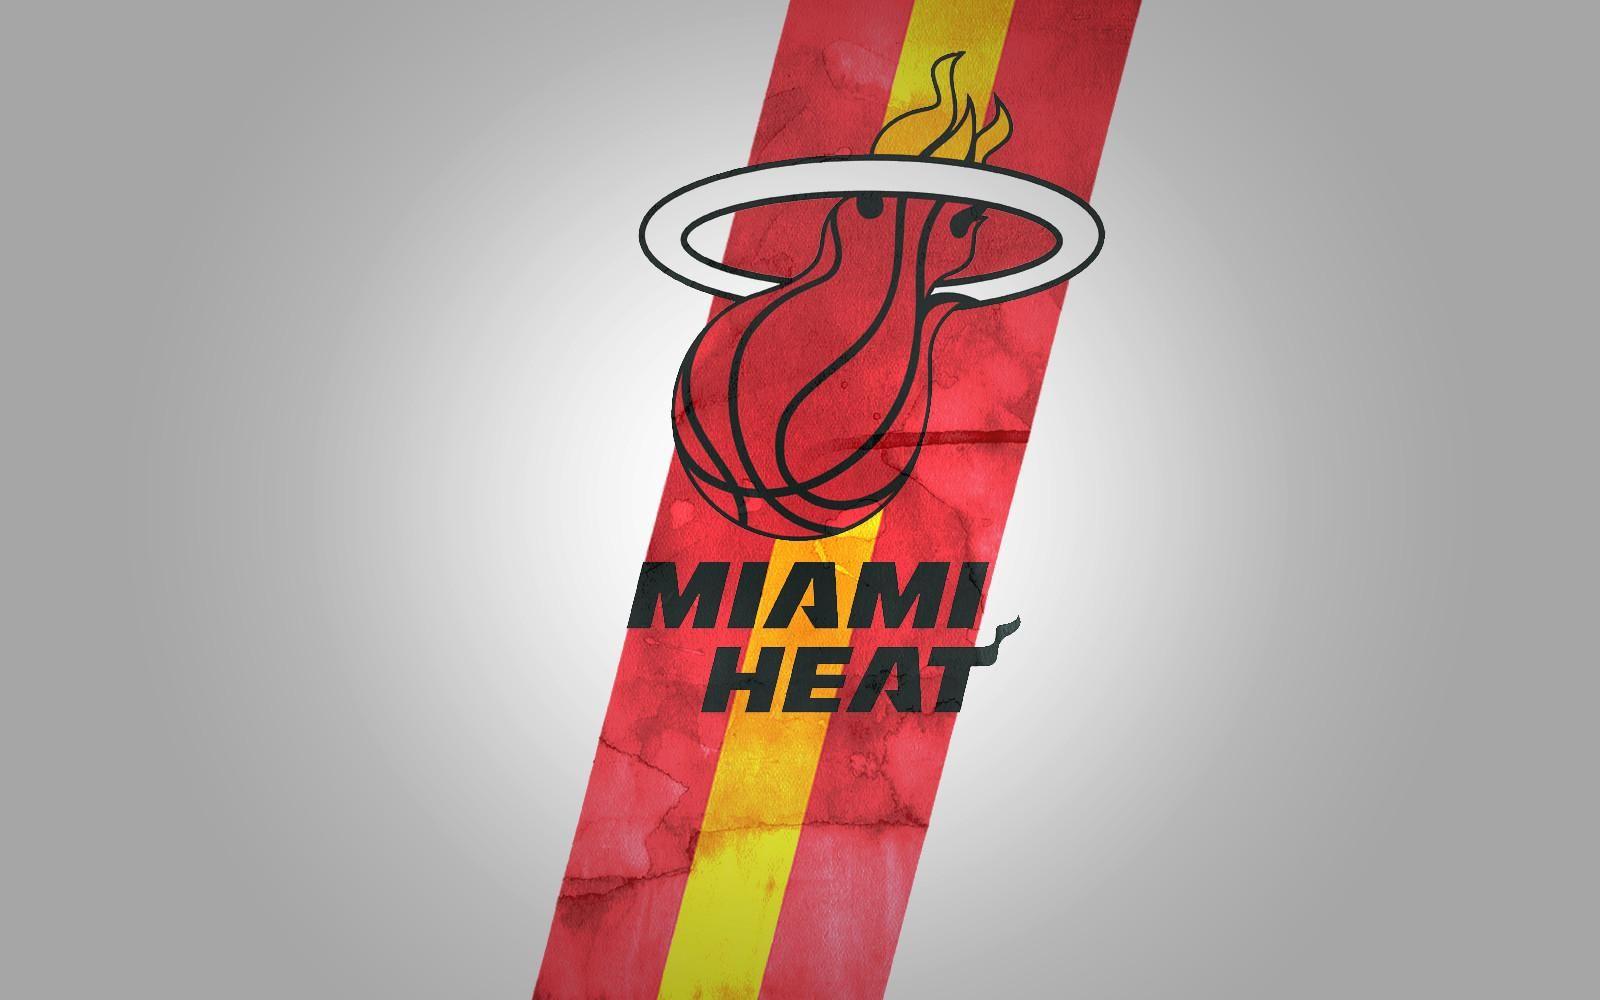 Miami Heat Wallpaper (Picture)